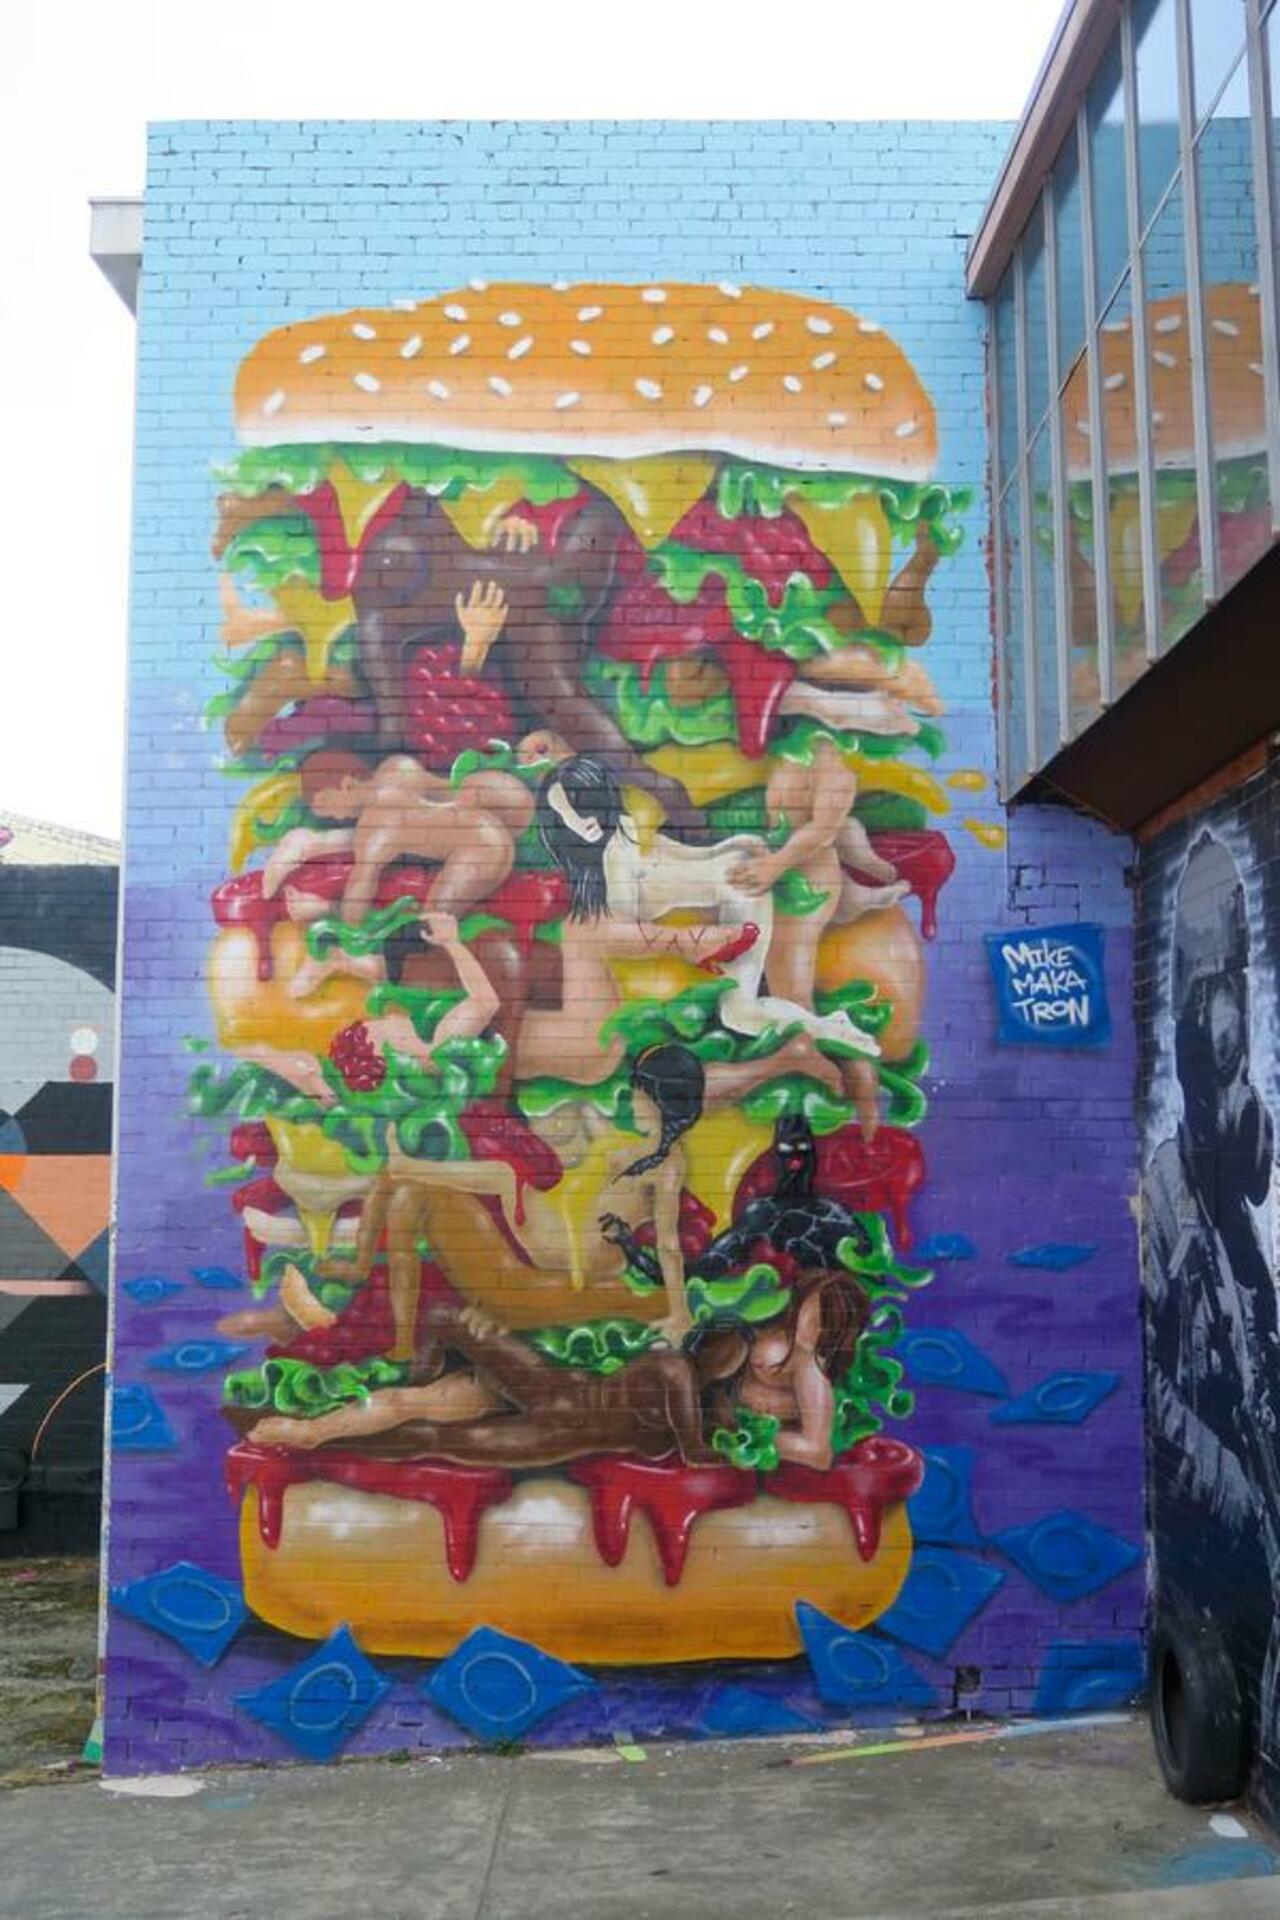 RT @BeArtist_BeArt: "Spicy Burger - by Makatron"   #art #streetart #graffiti #australia #melbourne 

https://beartistbeart.wordpress.com/2015/10/01/spicy-burguer-by-makatron/ http://t.co/O1vpiC7Huw